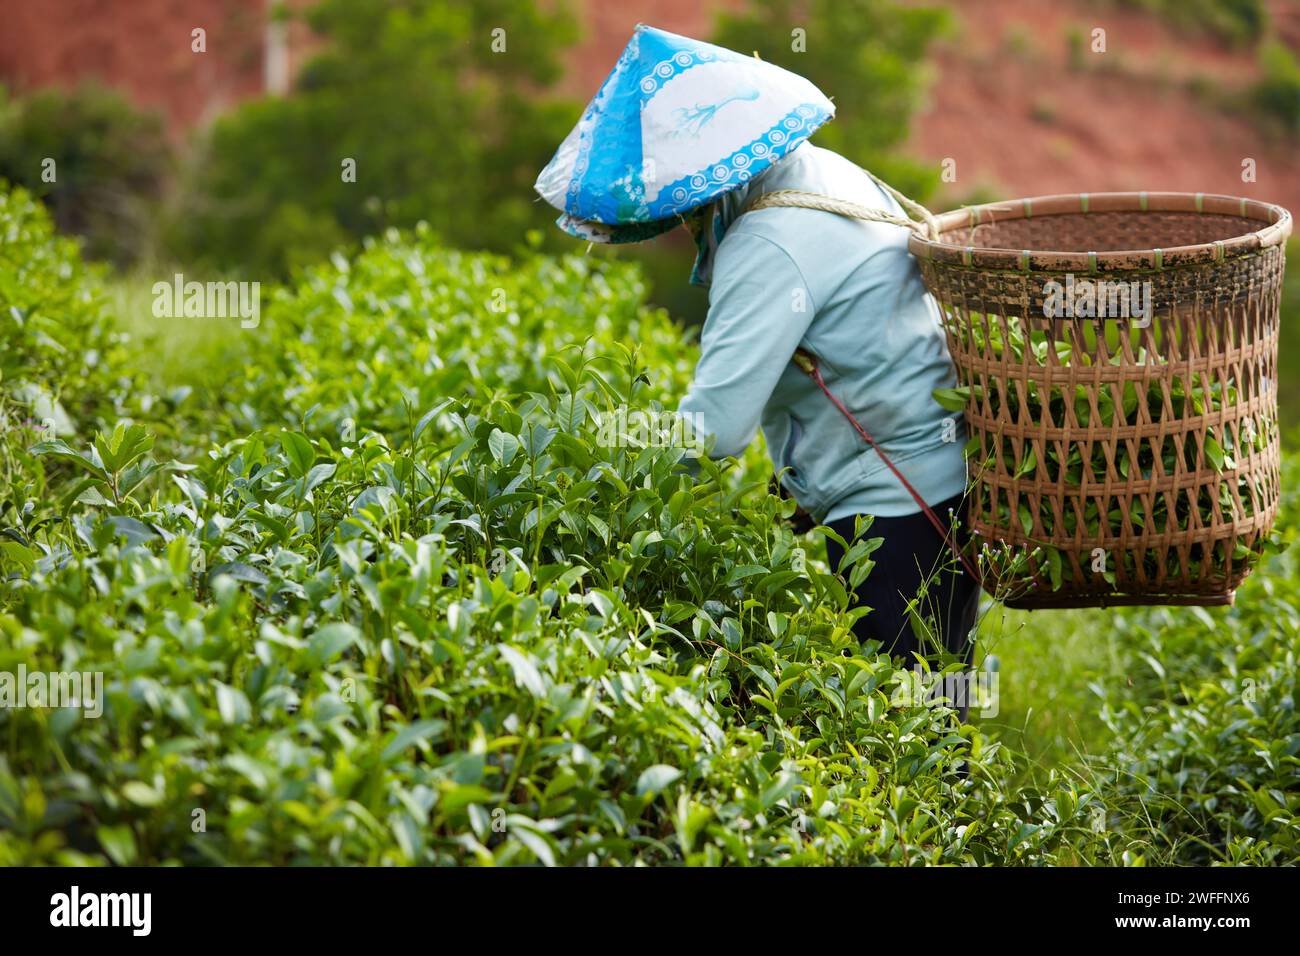 Bao Loc City, Vietnam: Un contadino ha un cesto di bambù sulla schiena e indossa un cappello conico raccoglie foglie di tè verde fresco in una piantagione di tè in orecchie Foto Stock